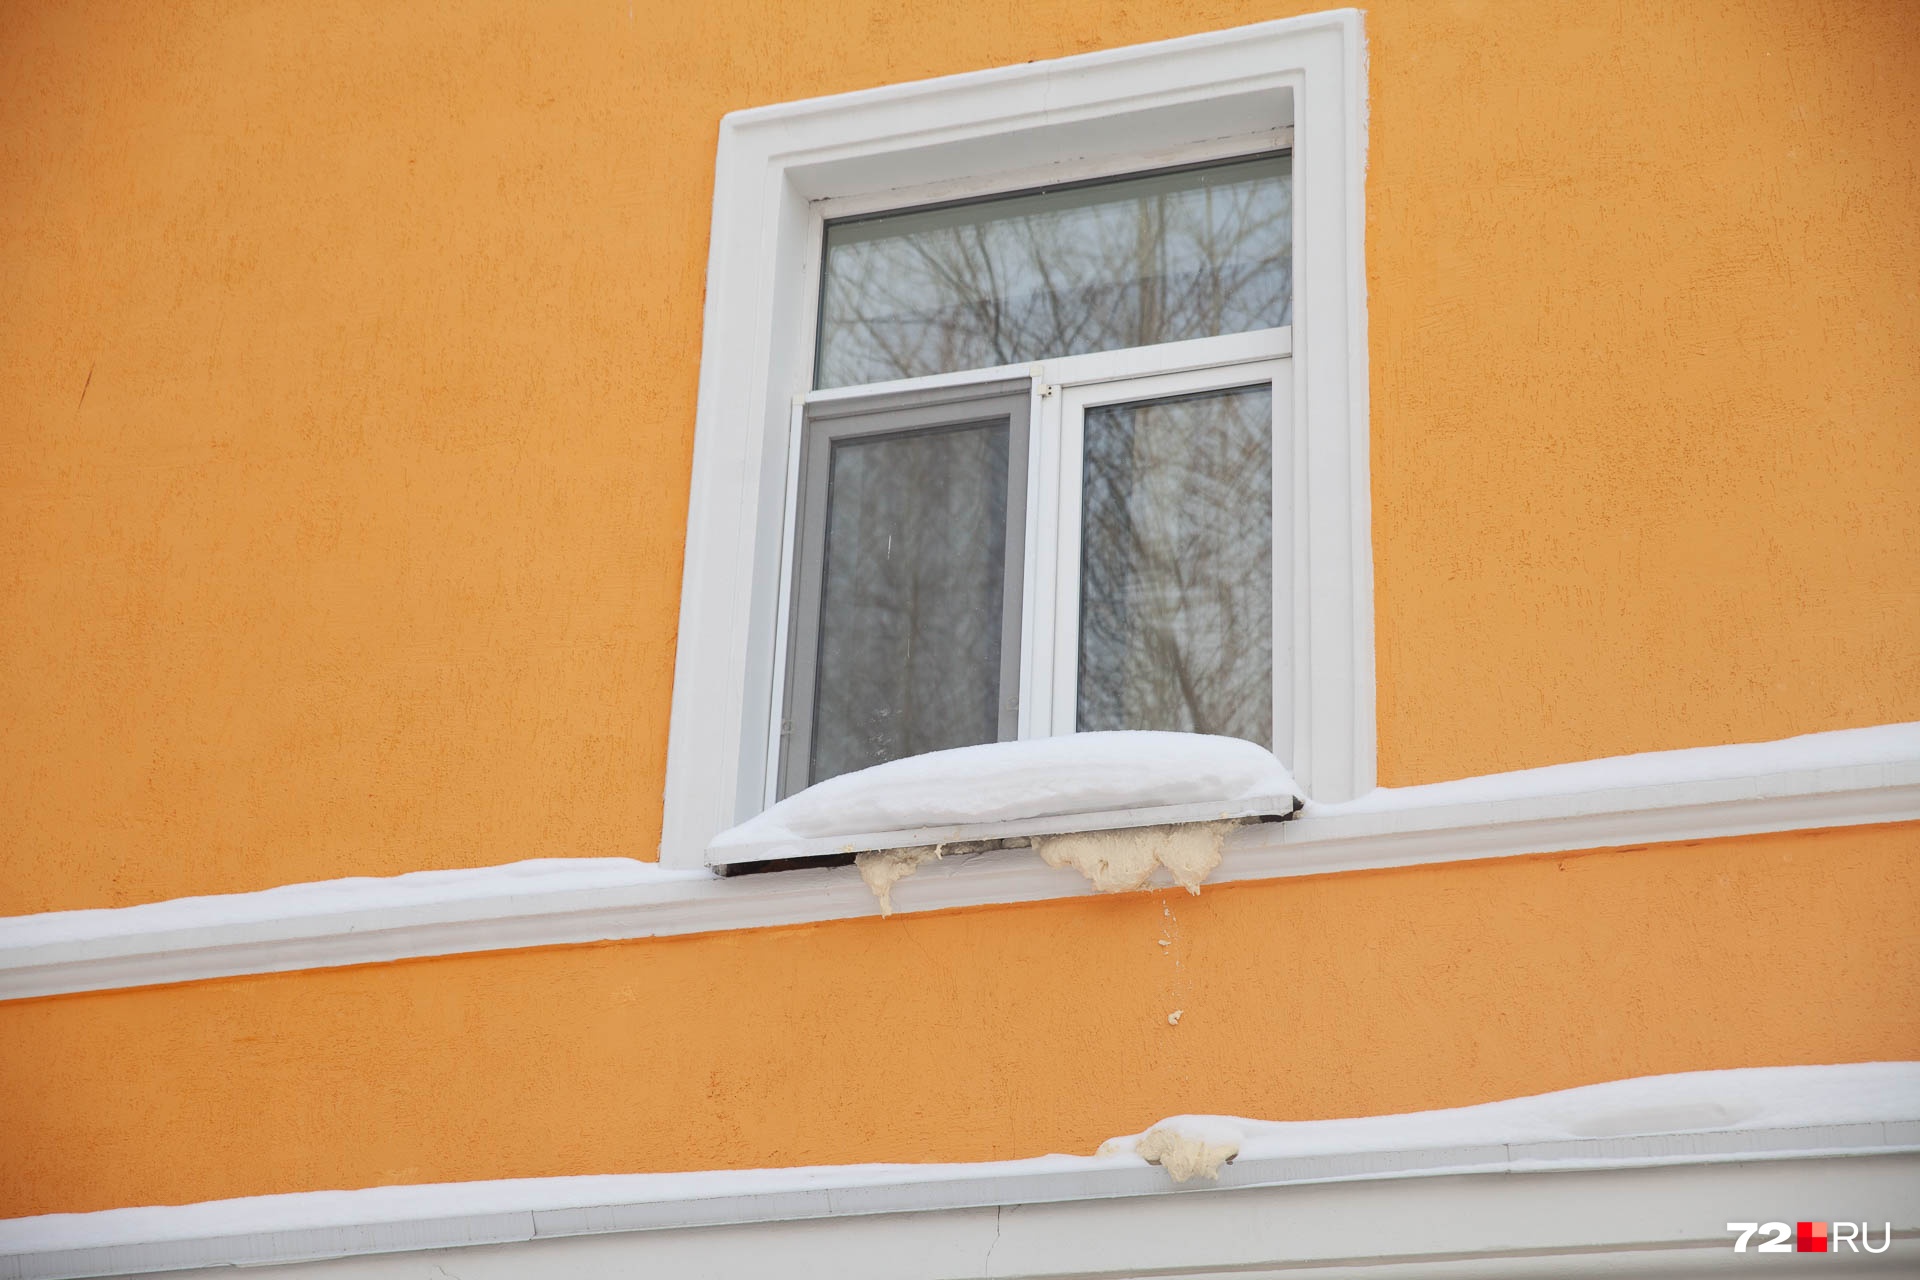 Связано ли это с капремонтом — неизвестно, но кто-то спешно решил задействовать монтажную пену, чтобы устранить щели в окне